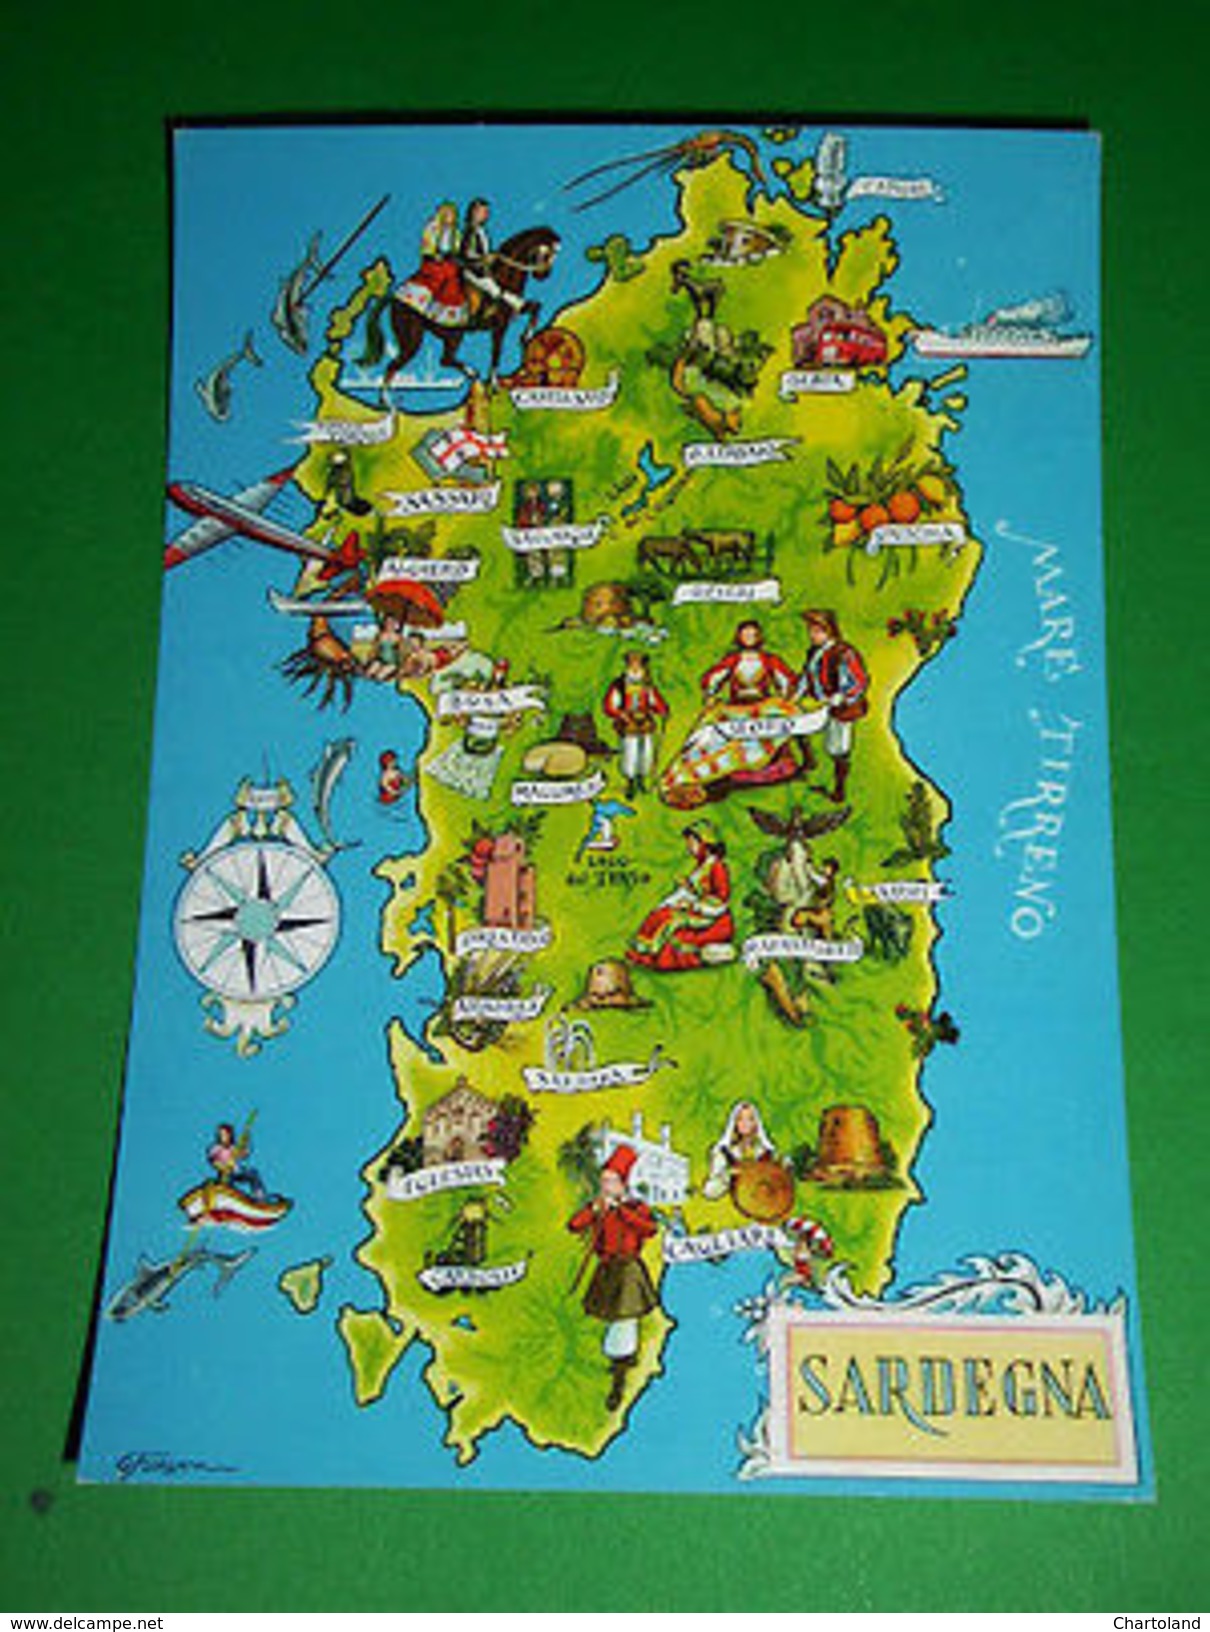 Cartolina Cartina Della Sardegna ( Bosa Alghero Sardara Carbonia Ecc. ) 1960 Ca - Cagliari